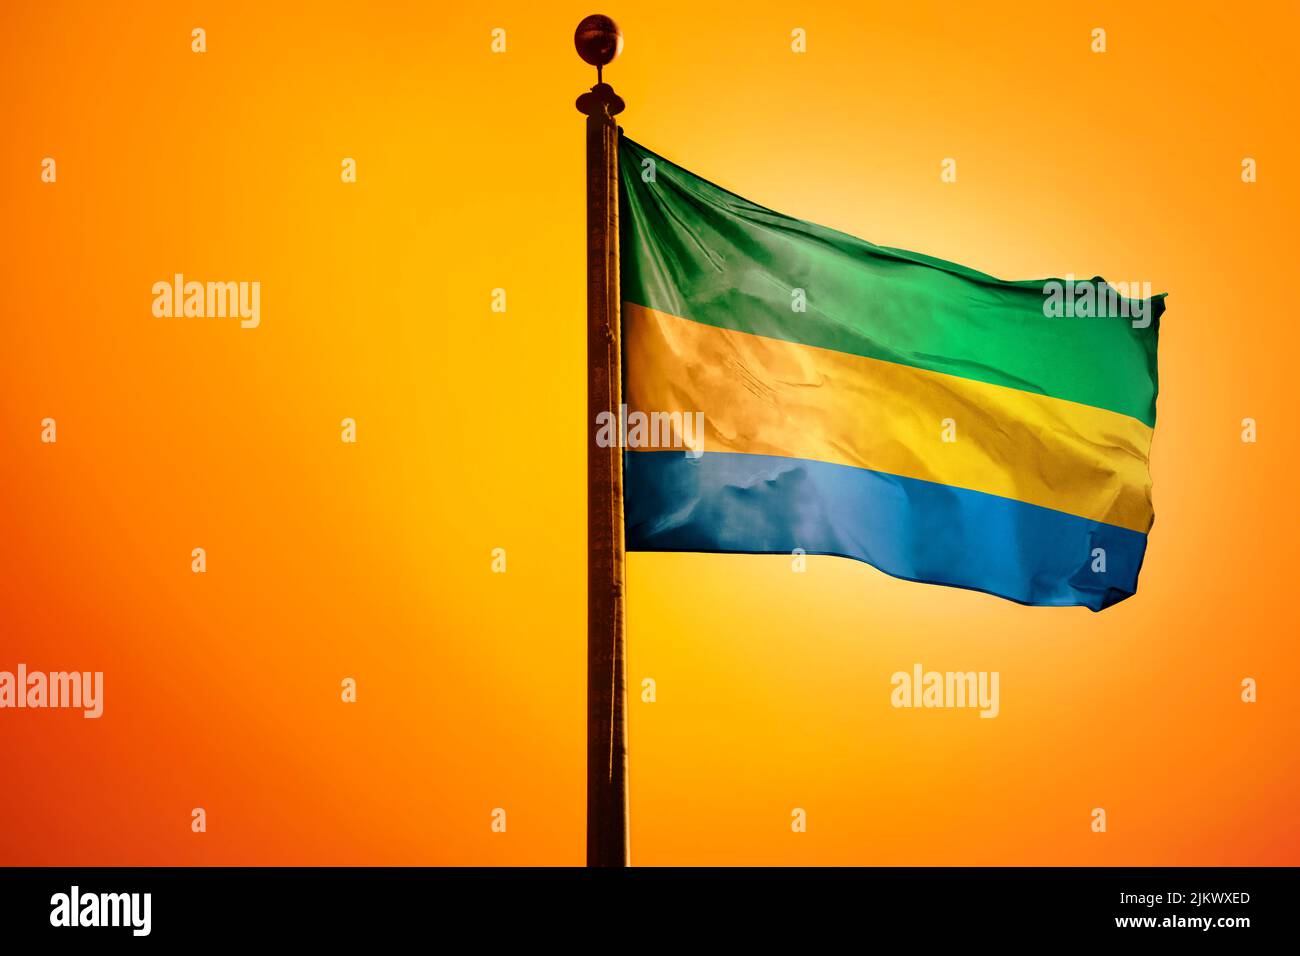 Une illustration numérique du drapeau du Gabon qui agite contre un ciel jaune vif Banque D'Images